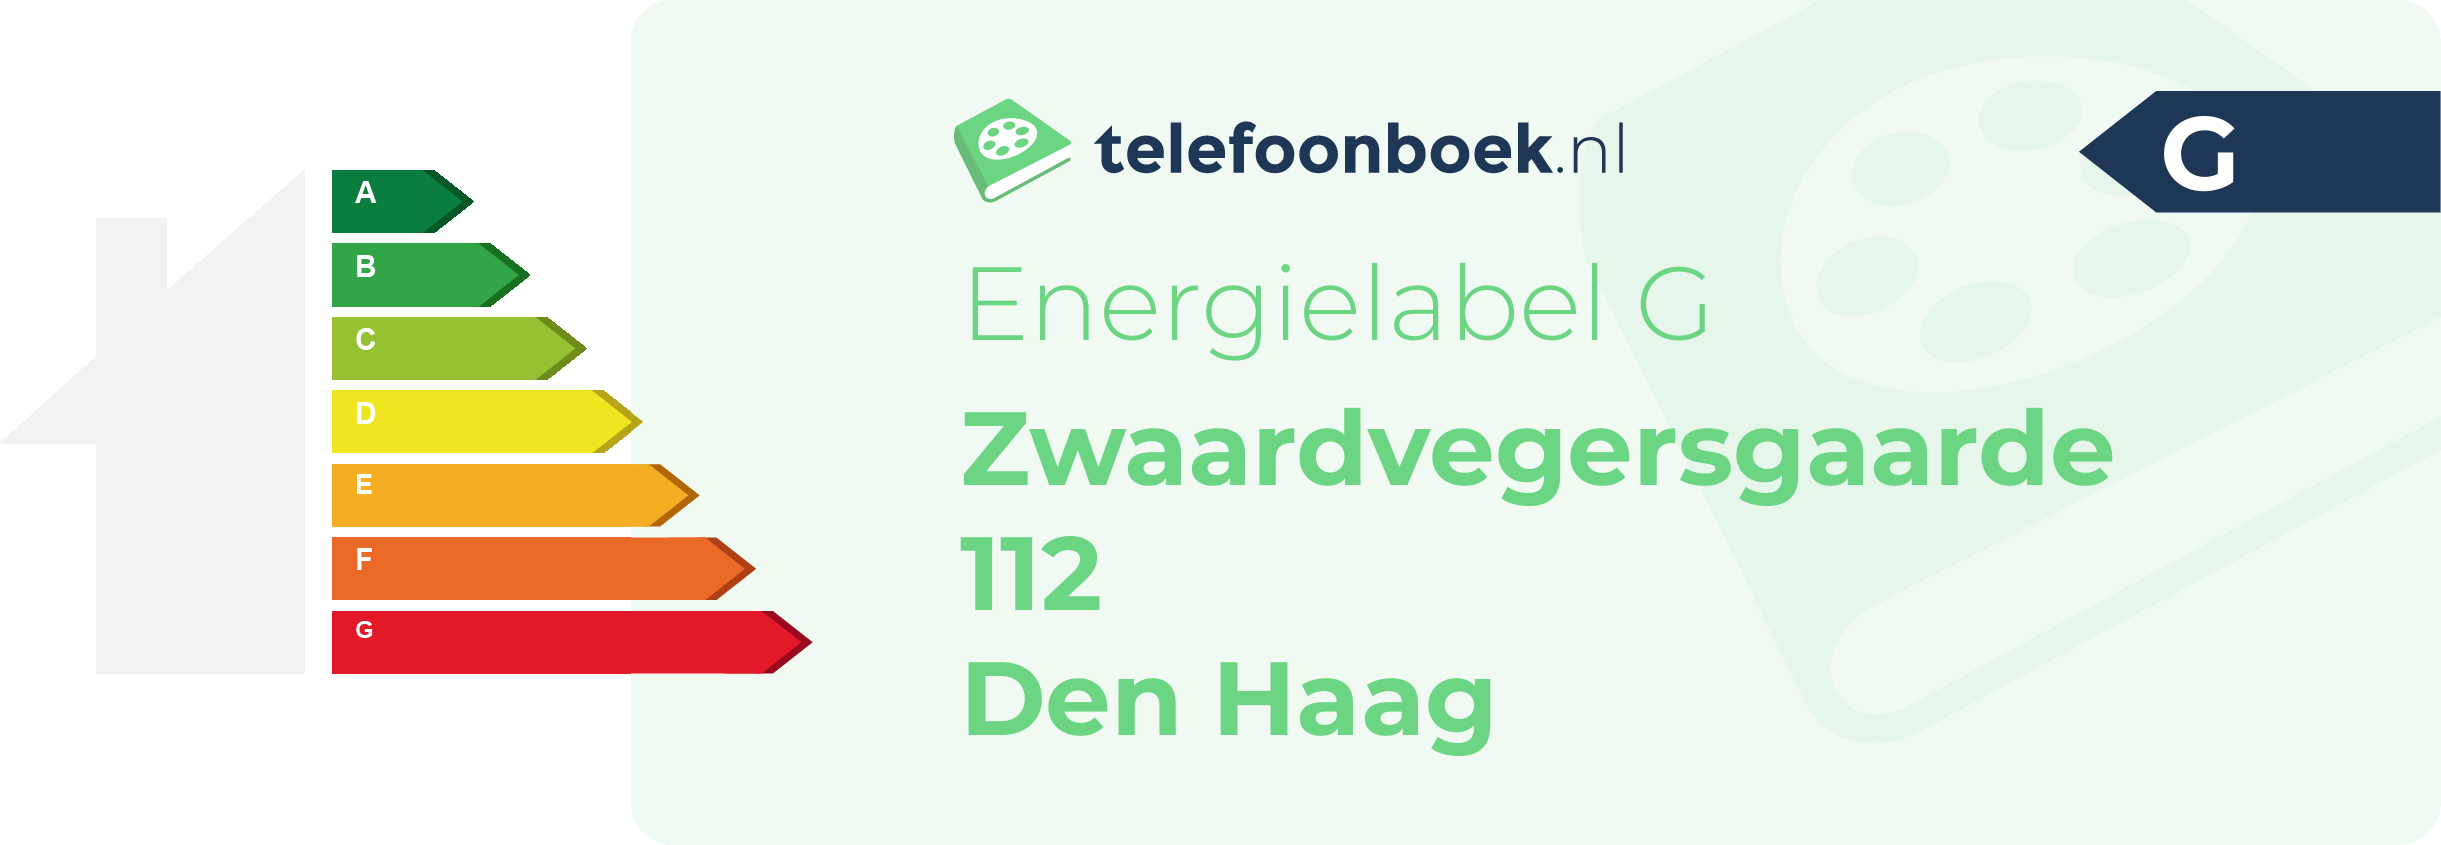 Energielabel Zwaardvegersgaarde 112 Den Haag